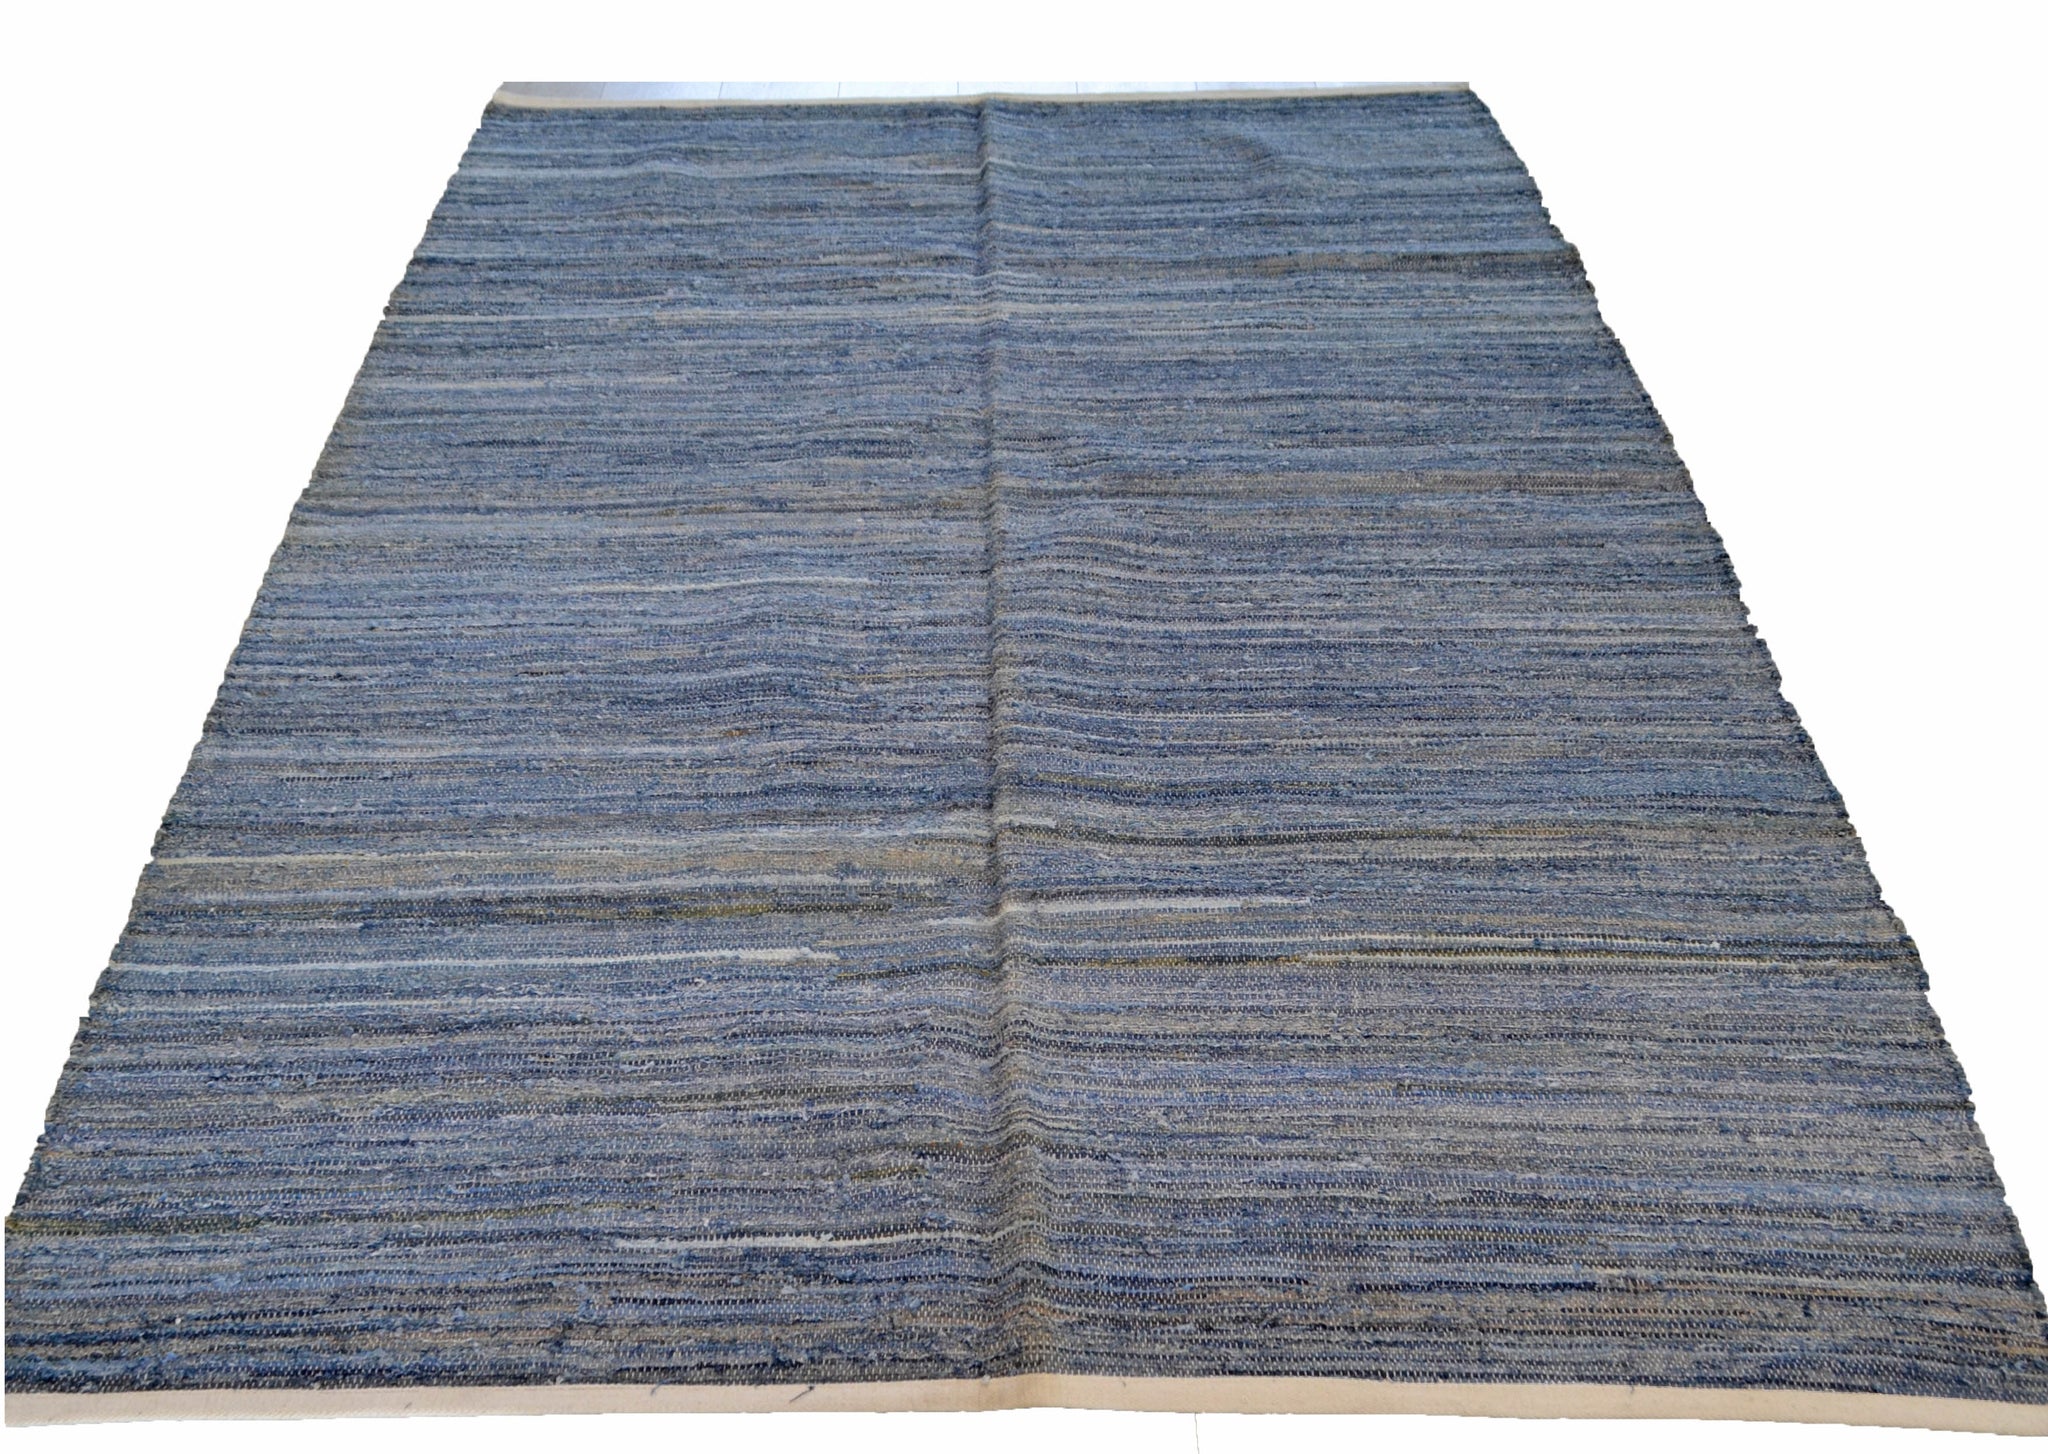 Denim Rug Chindi 160x240cm Blue Navy Cotton Recycled - DesignsEmporium